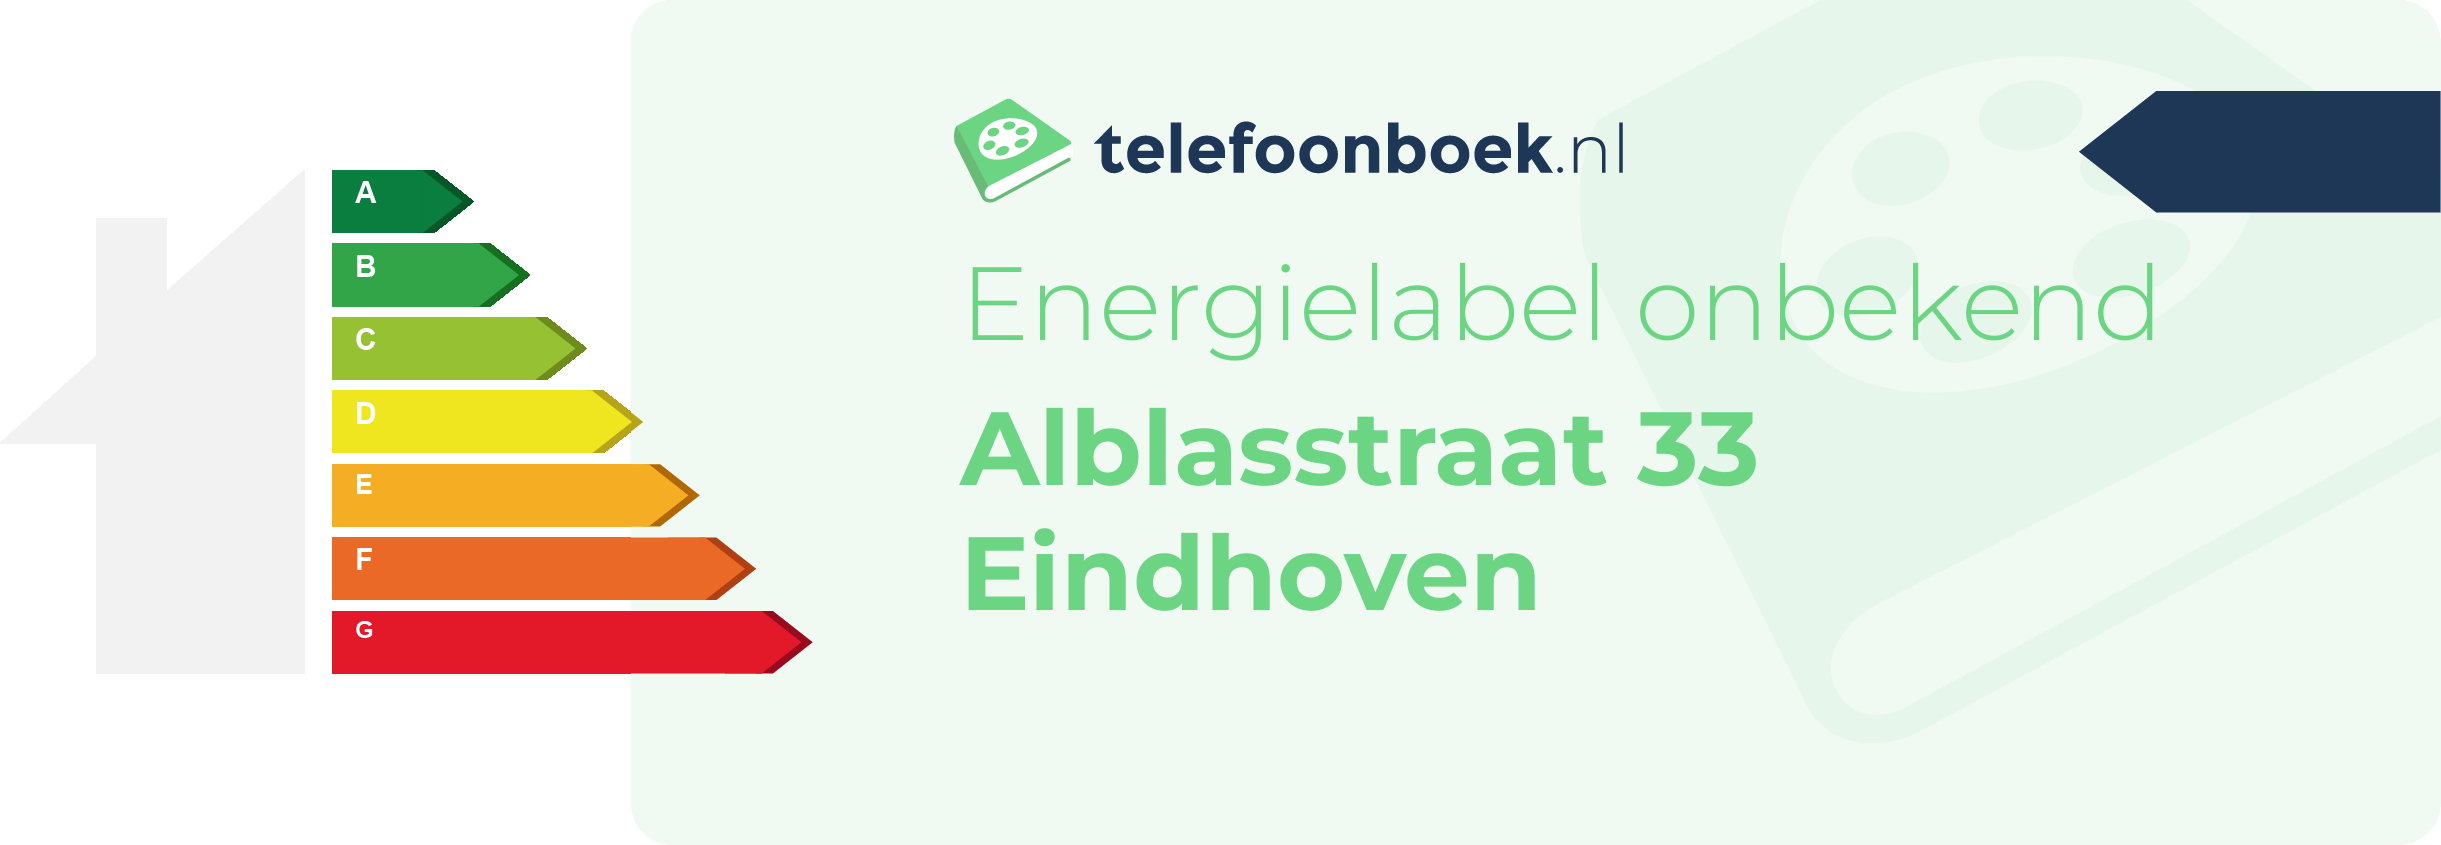 Energielabel Alblasstraat 33 Eindhoven